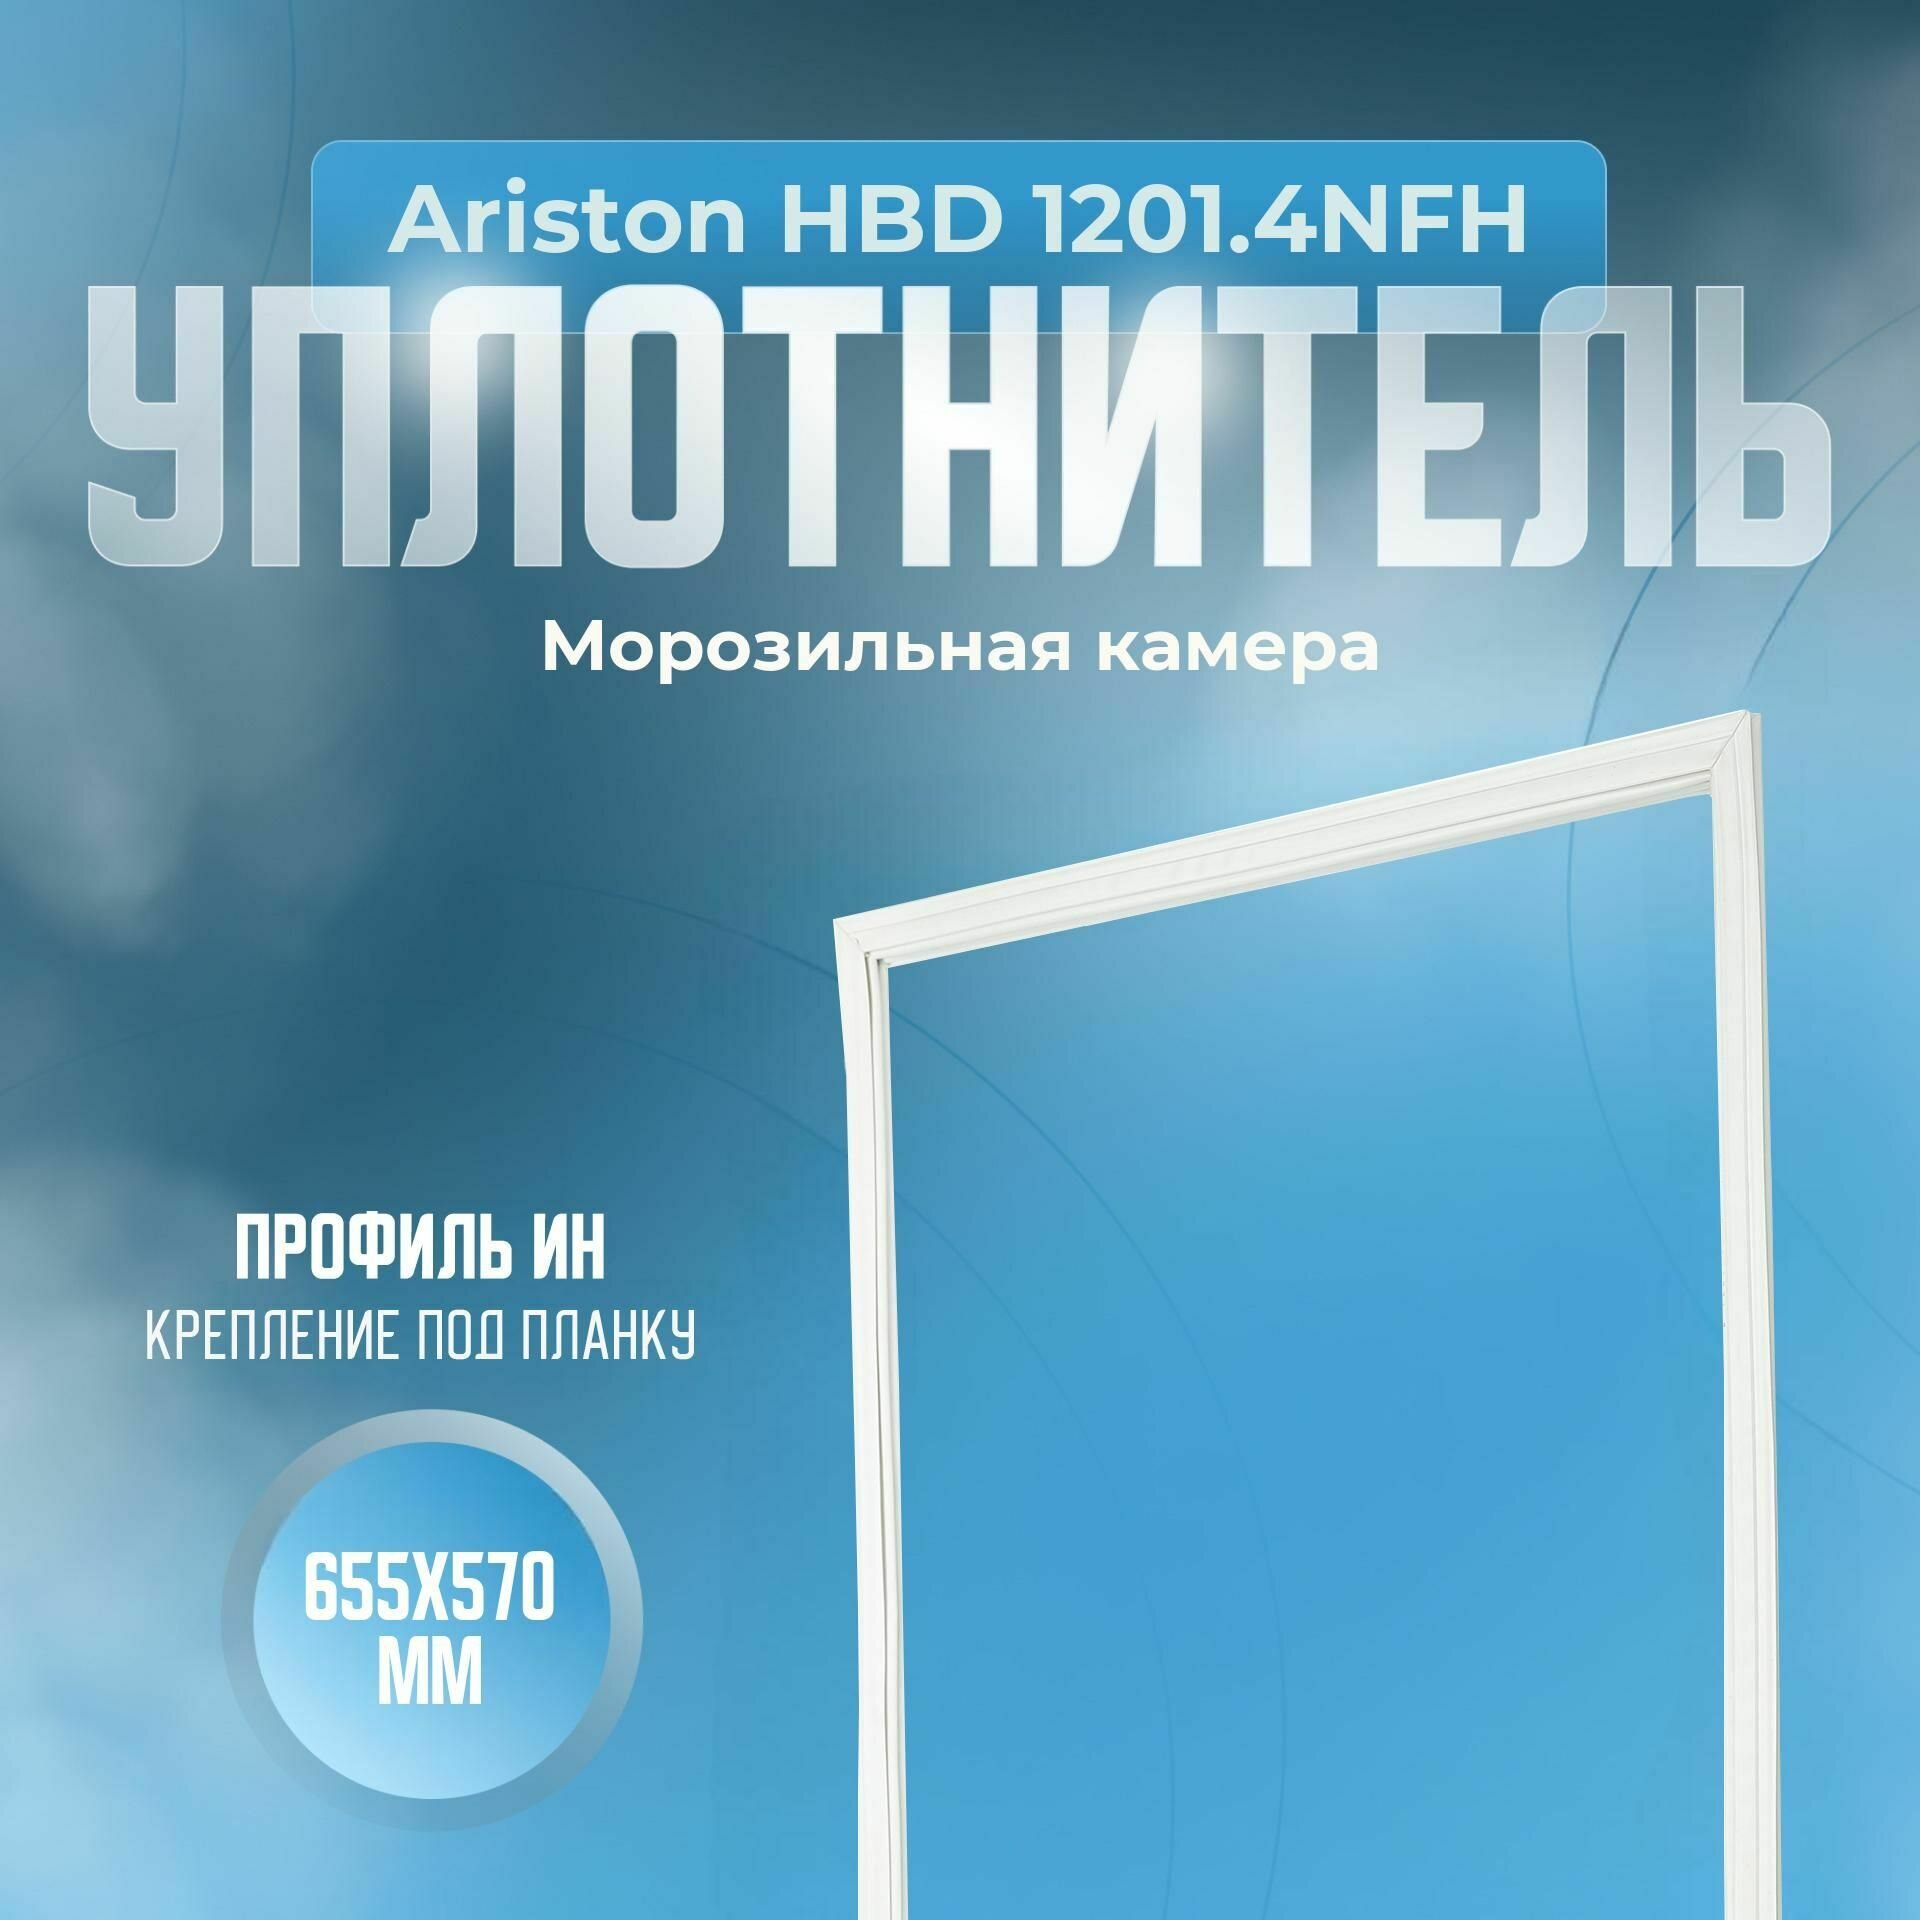 Уплотнитель Ariston HBD 1201.4NFH. м. к, Размер - 655х570 мм. ИН